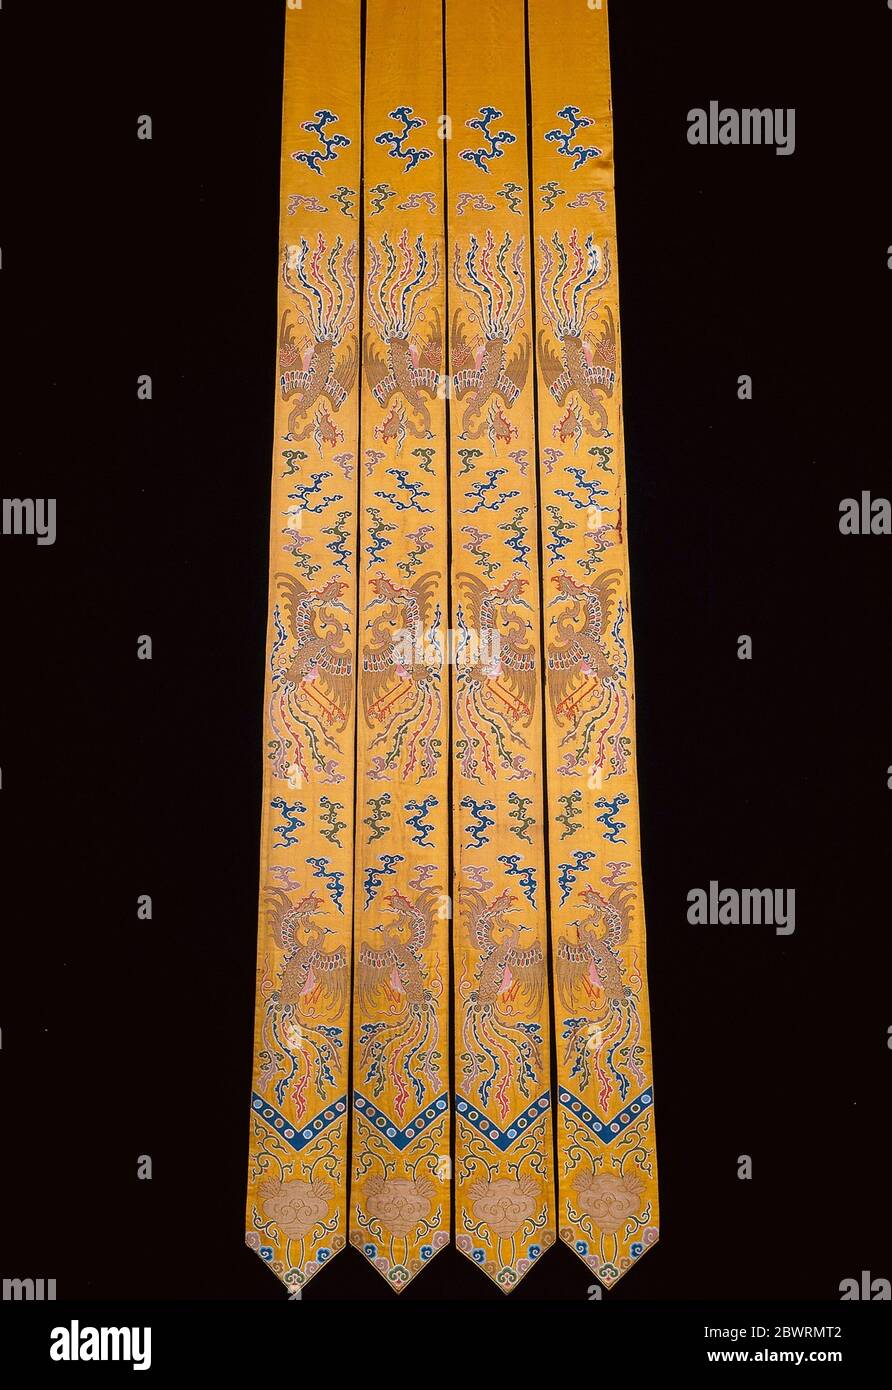 Auteur: Manchu. Pendents (pour les rideaux de lit) - dynastie Qing (1644'1911), 1736/95 - Manchu Chine. Soie, feuilles d'or sur papier laqué, et Banque D'Images